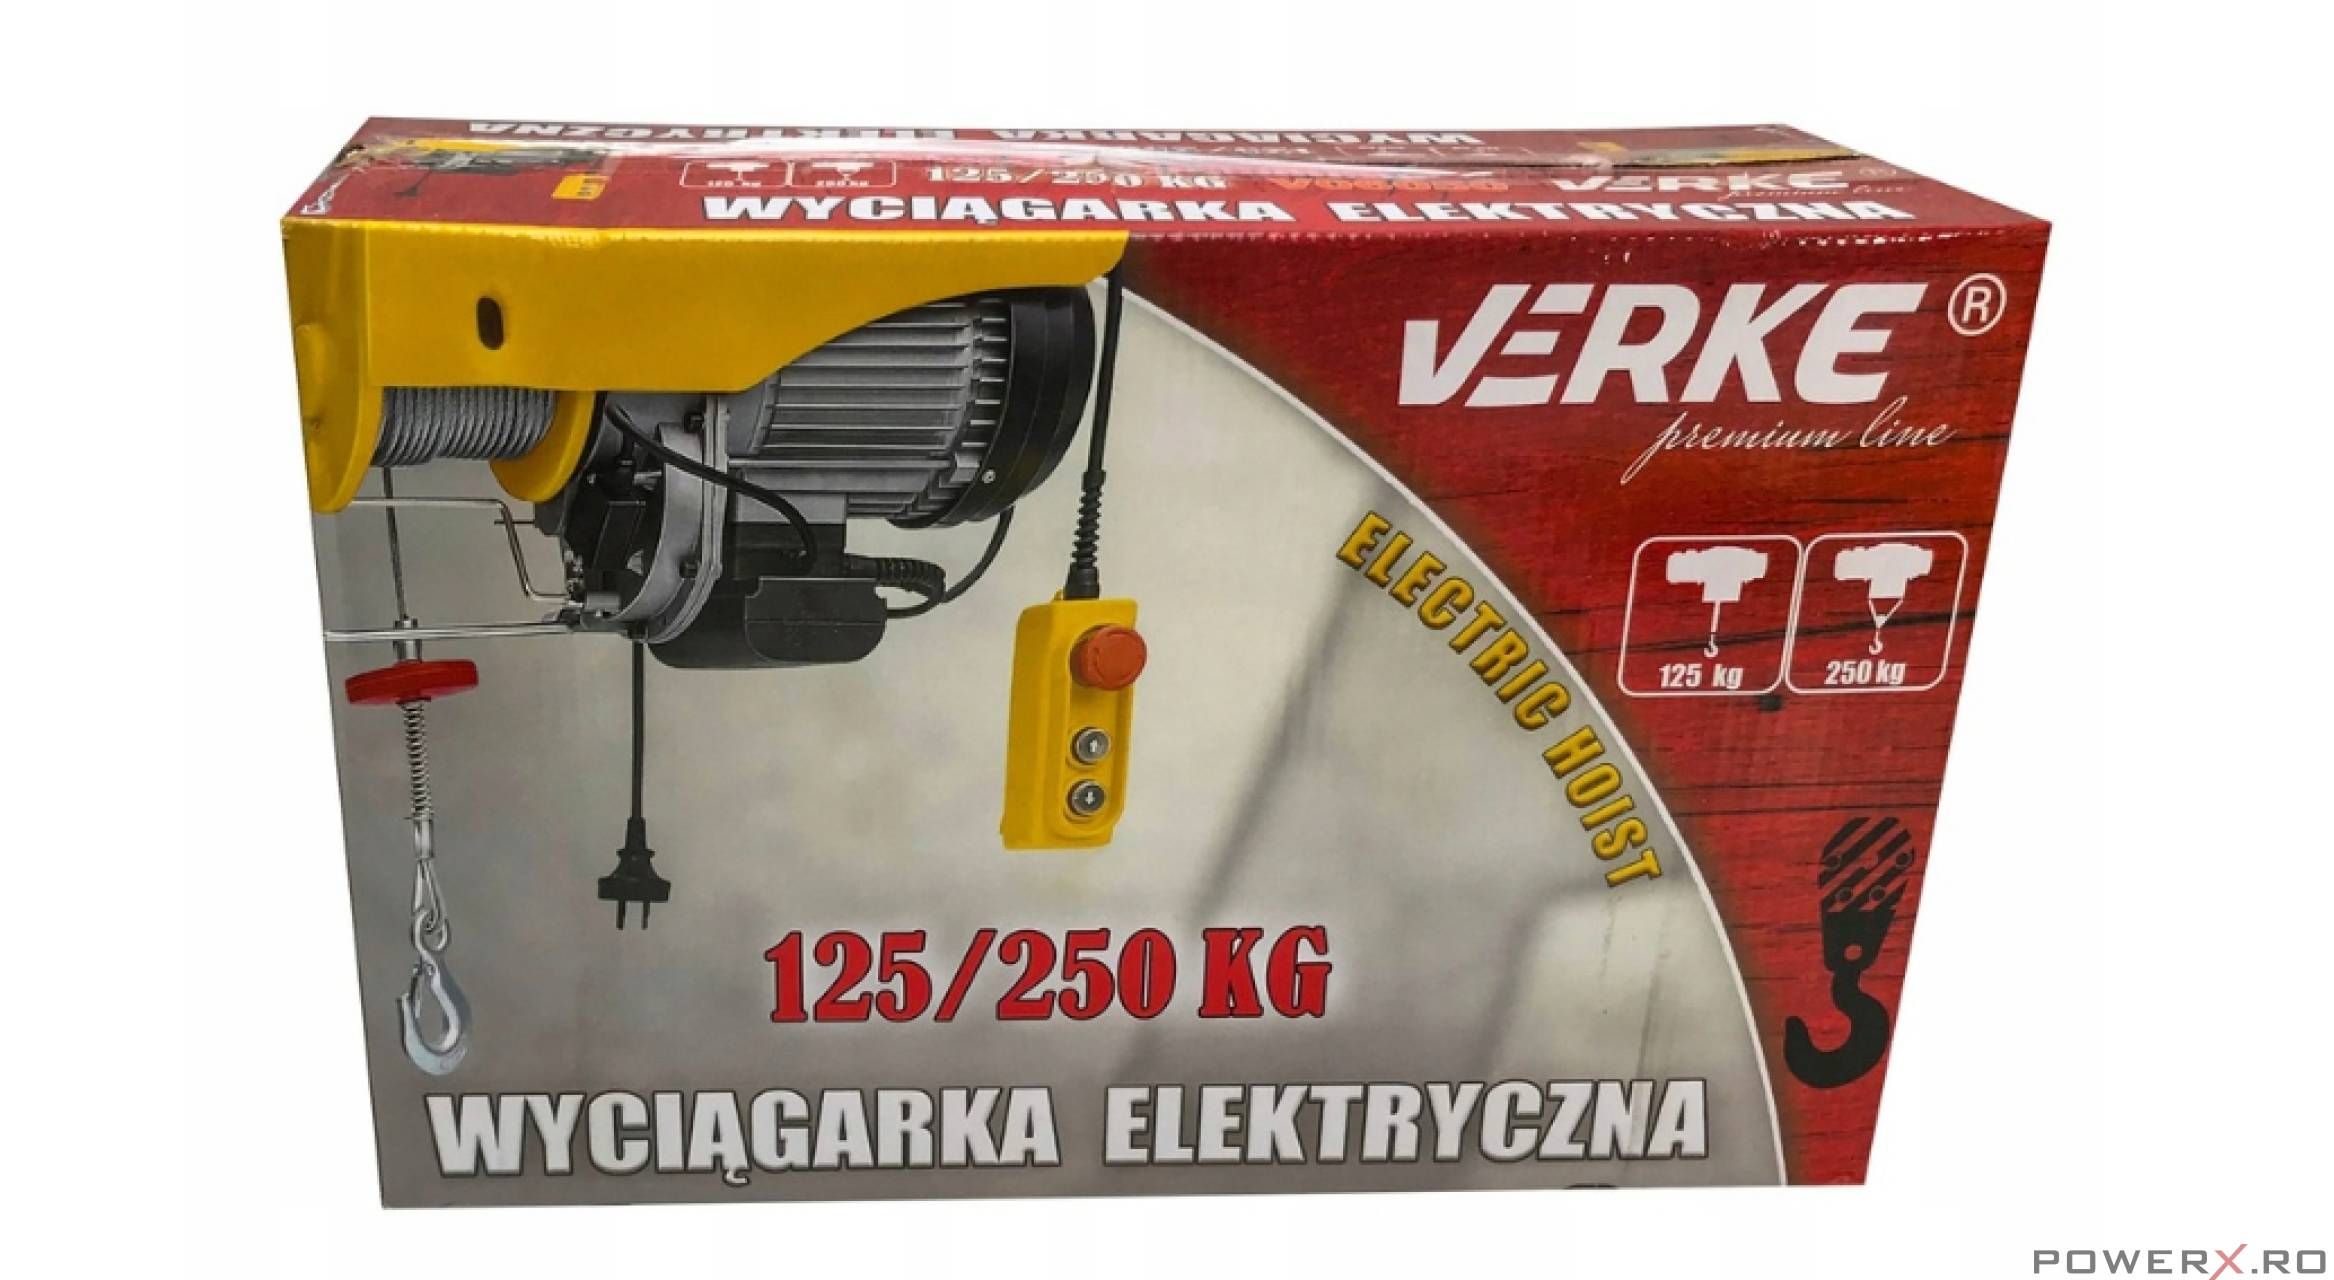 Electropalan 125 / 250 Kg, Macara Electrica, Troliu, Verke